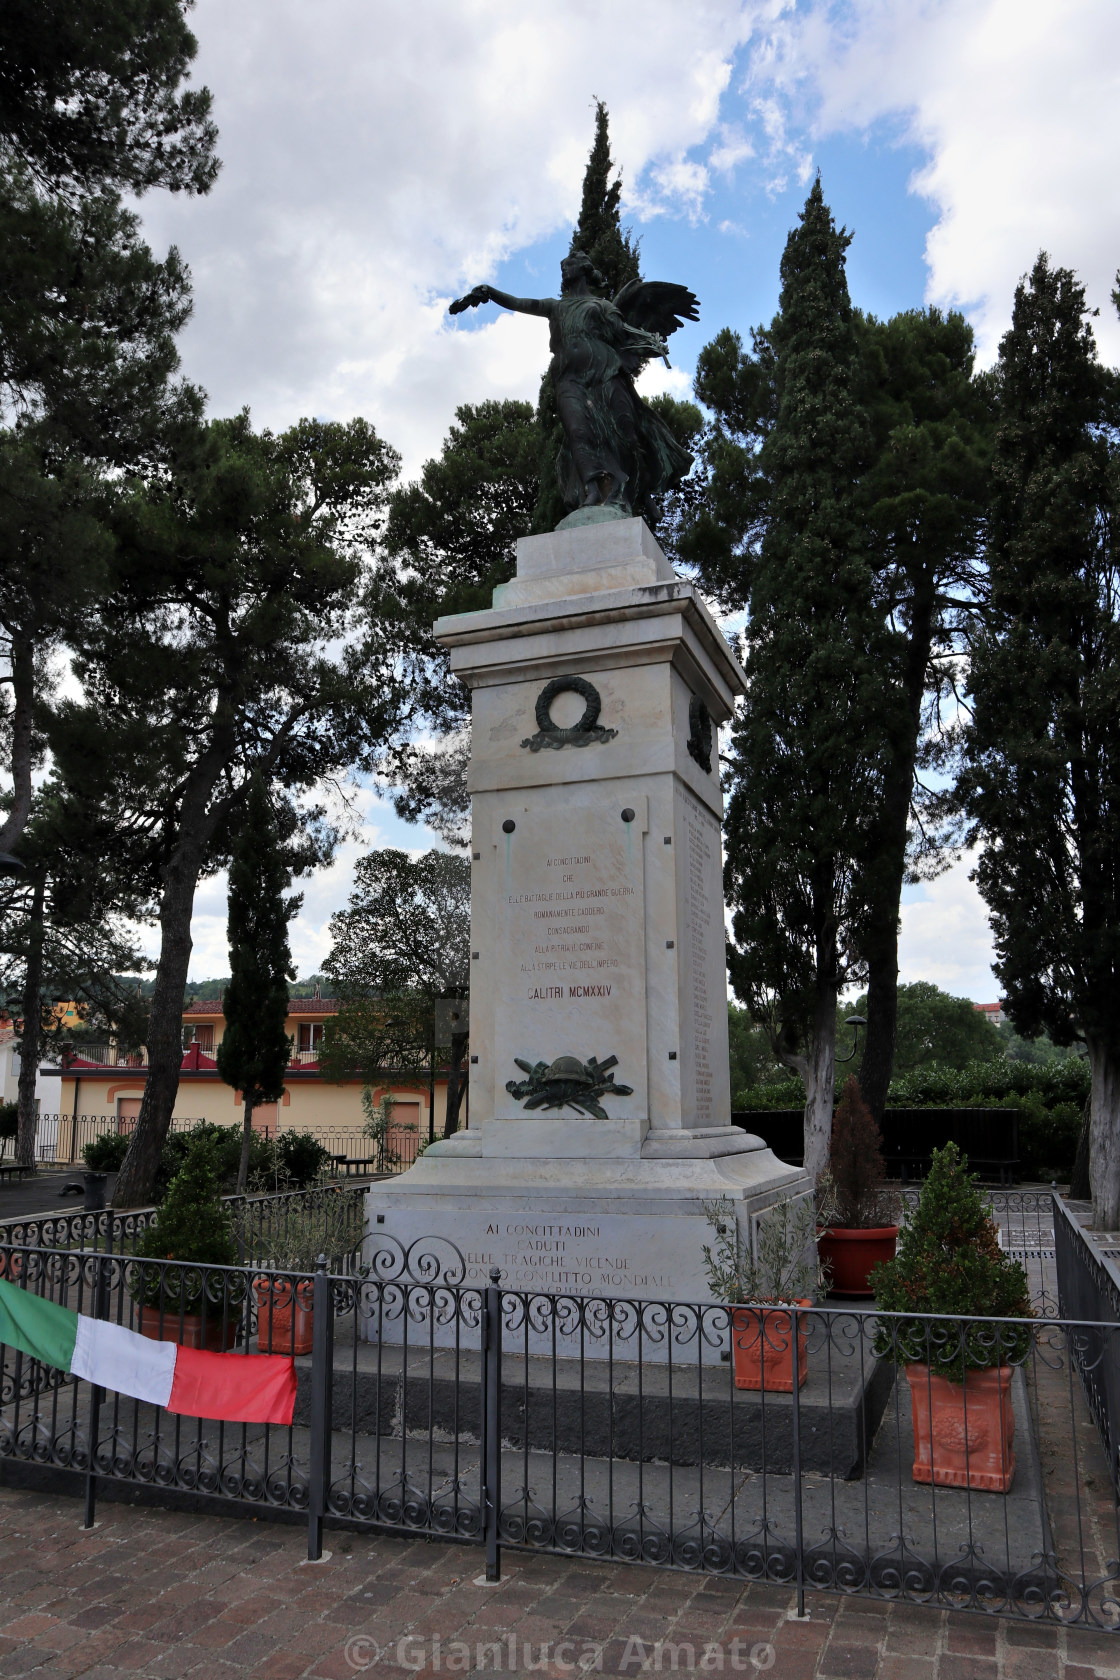 "Calitri - Monumento ai Caduti nel Giardinetto Comunale" stock image